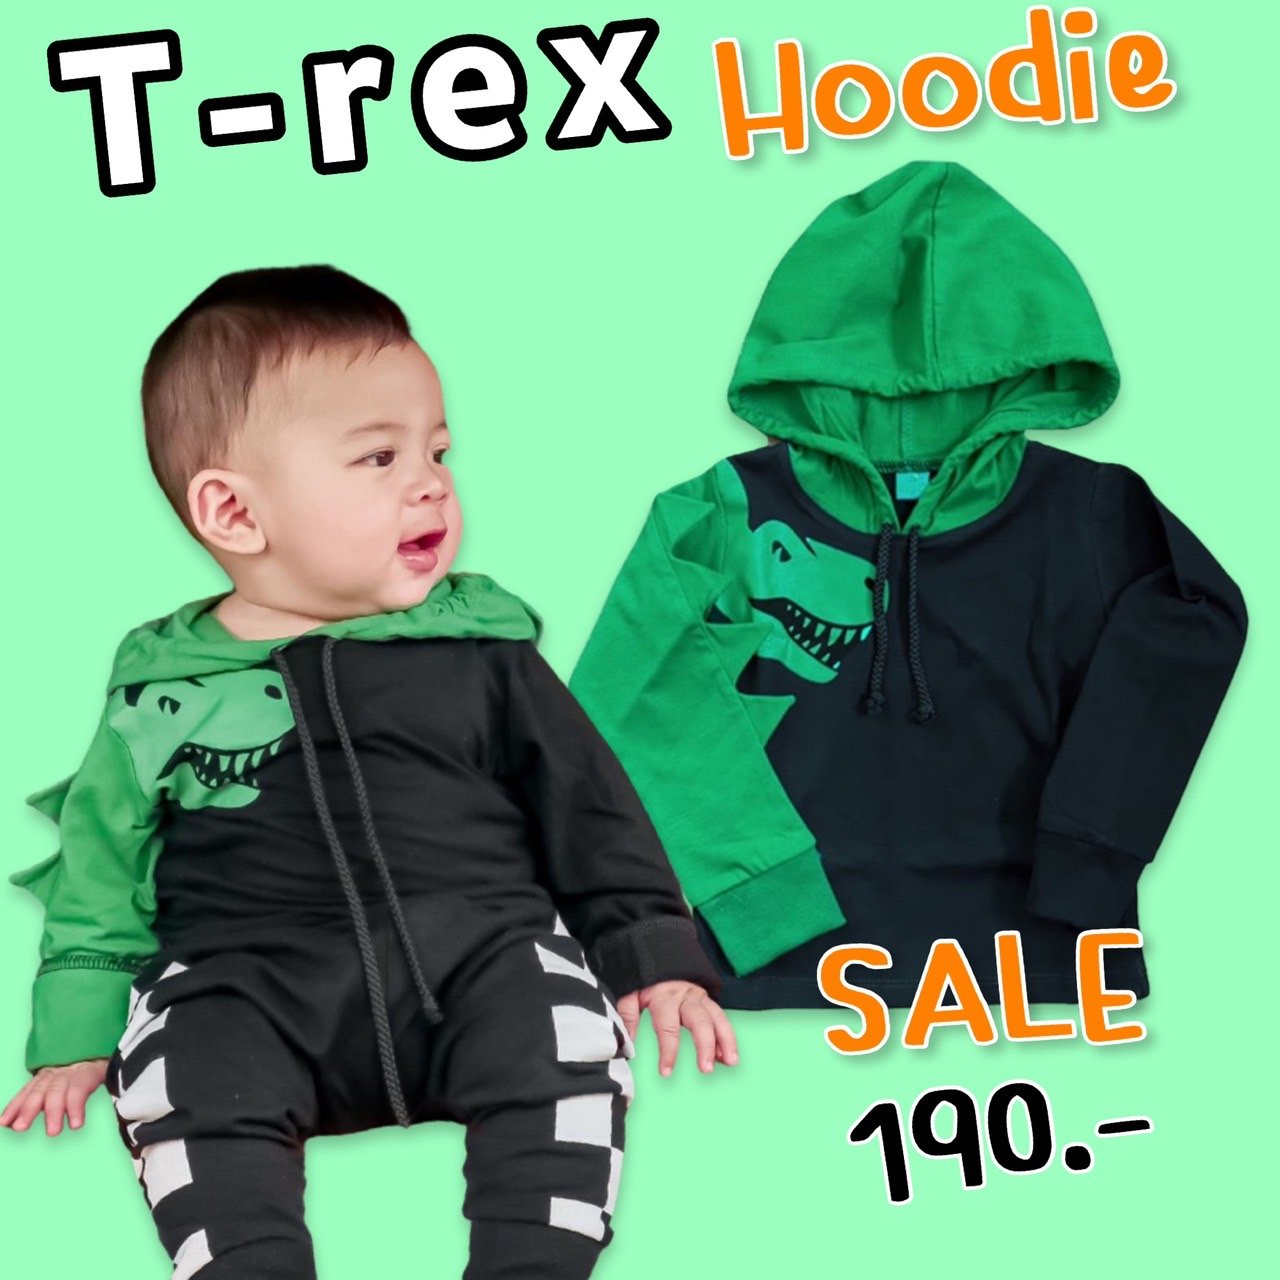 T-Rex Roarrrr Hoodie #SALE190